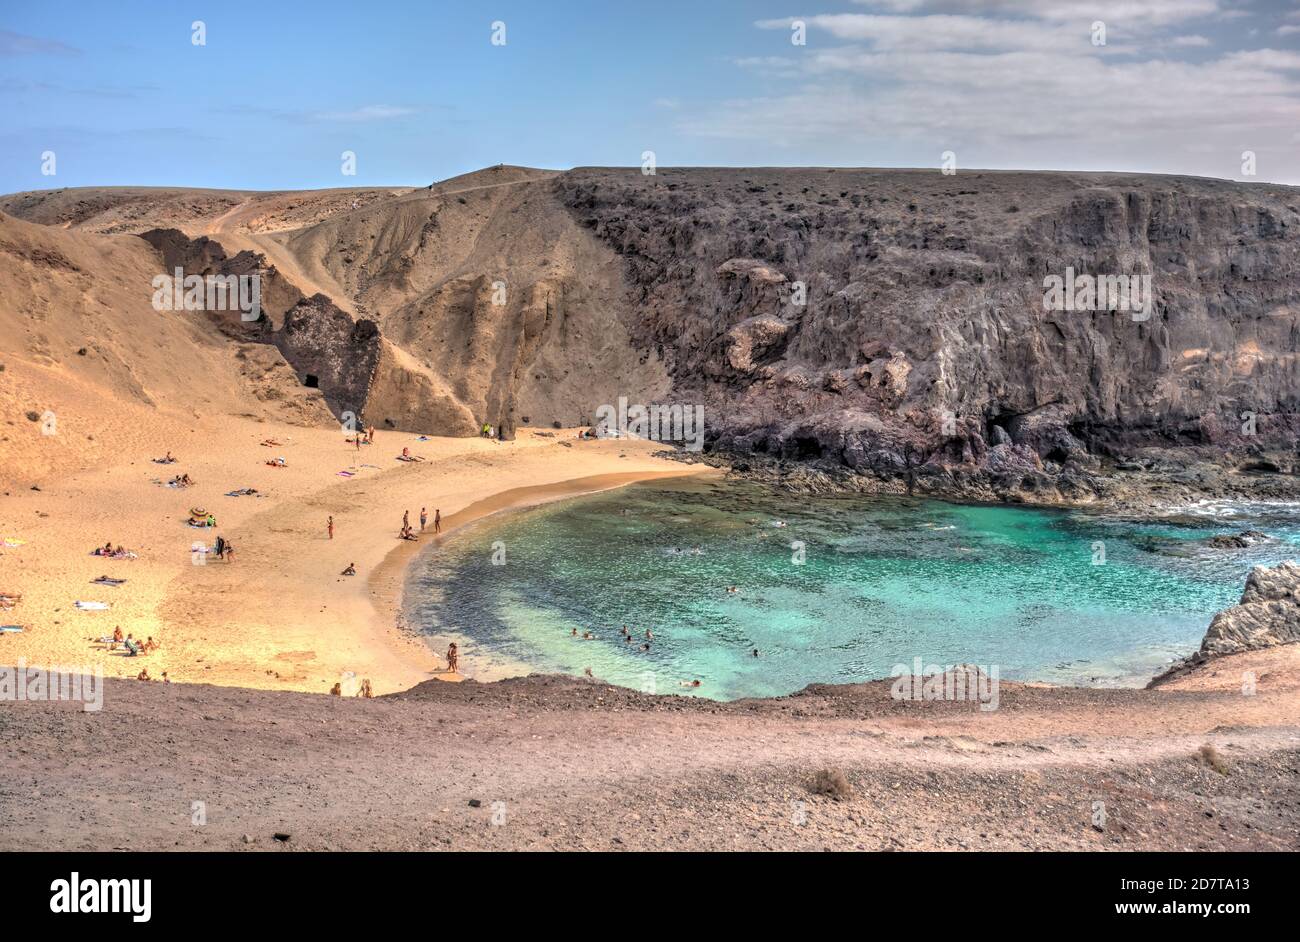 Playa del Papagayo, Lanzarote, HDR Image Stock Photo